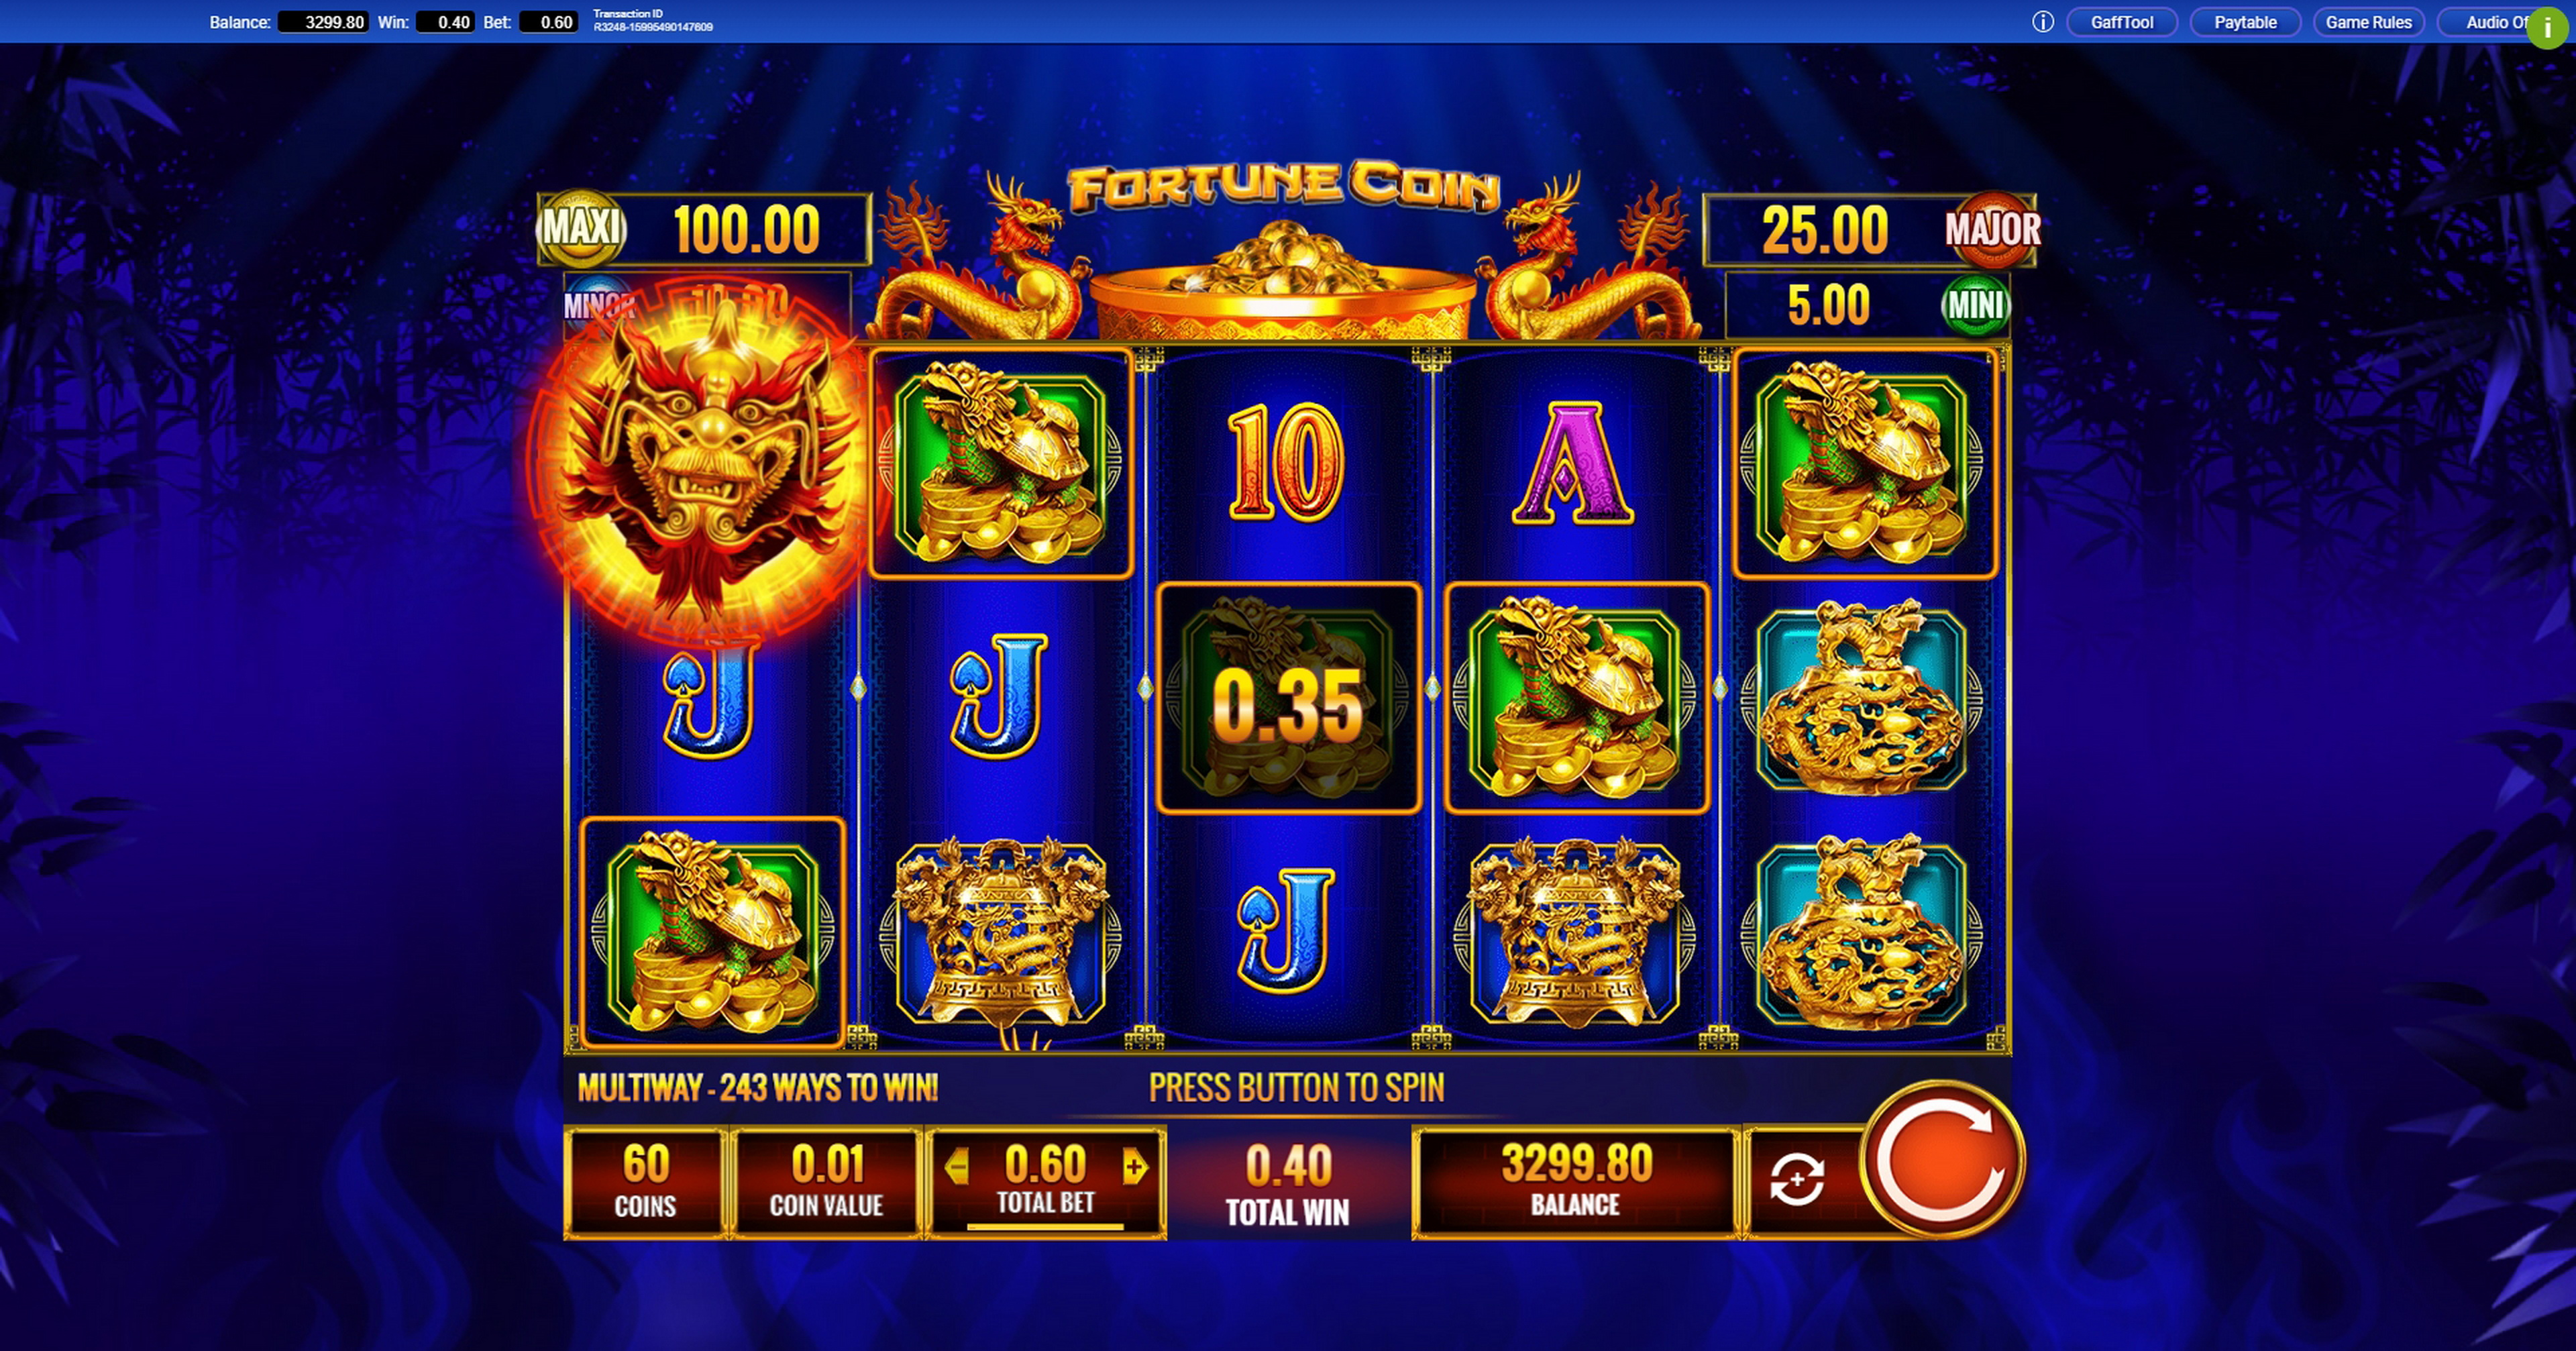 Fortune Coin Slot Machine